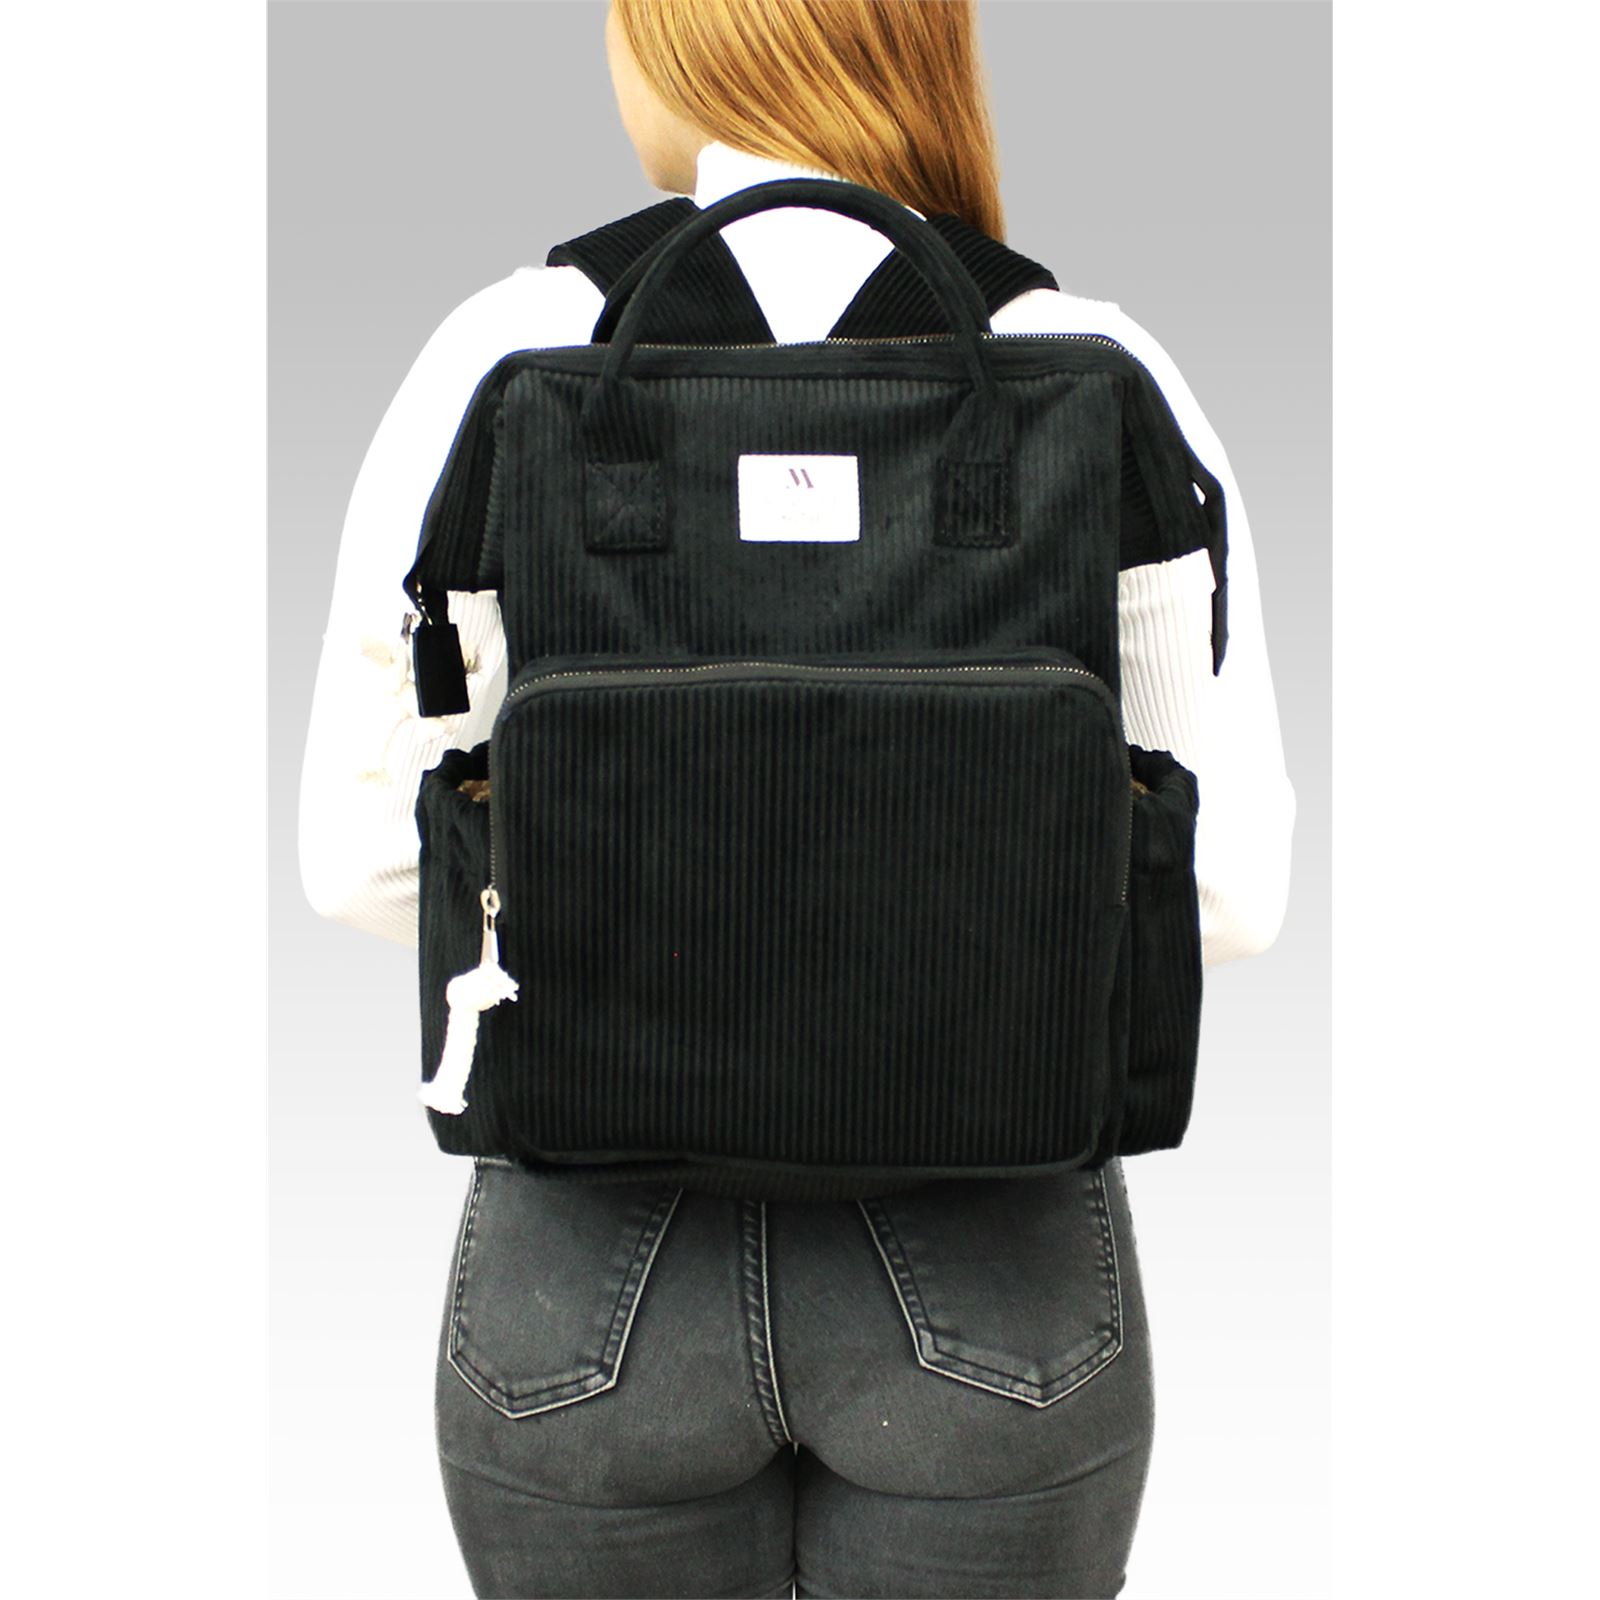 My Valice Smart Bag Usb'li Kadife Anne Bebek Bakım ve Sırt Çantası  Siyah